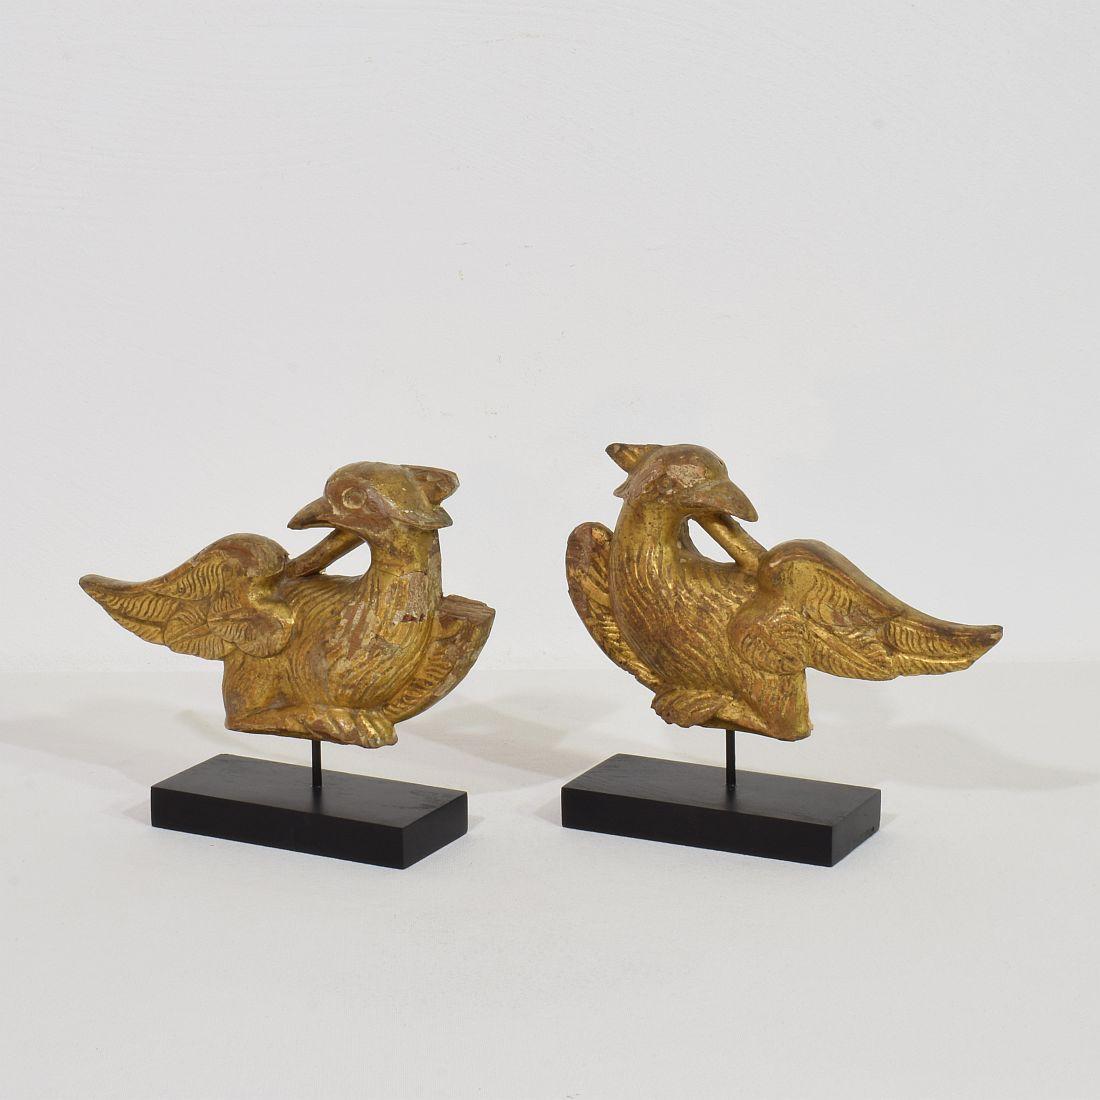 Wunderschönes Paar handgeschnitzter Vogelfragmente aus Vergoldungsholz. 
Frankreich ca. 1805-1820 . Verwitterung und kleine Schäden
Die Maße sind individuell und beinhalten den Holzsockel.